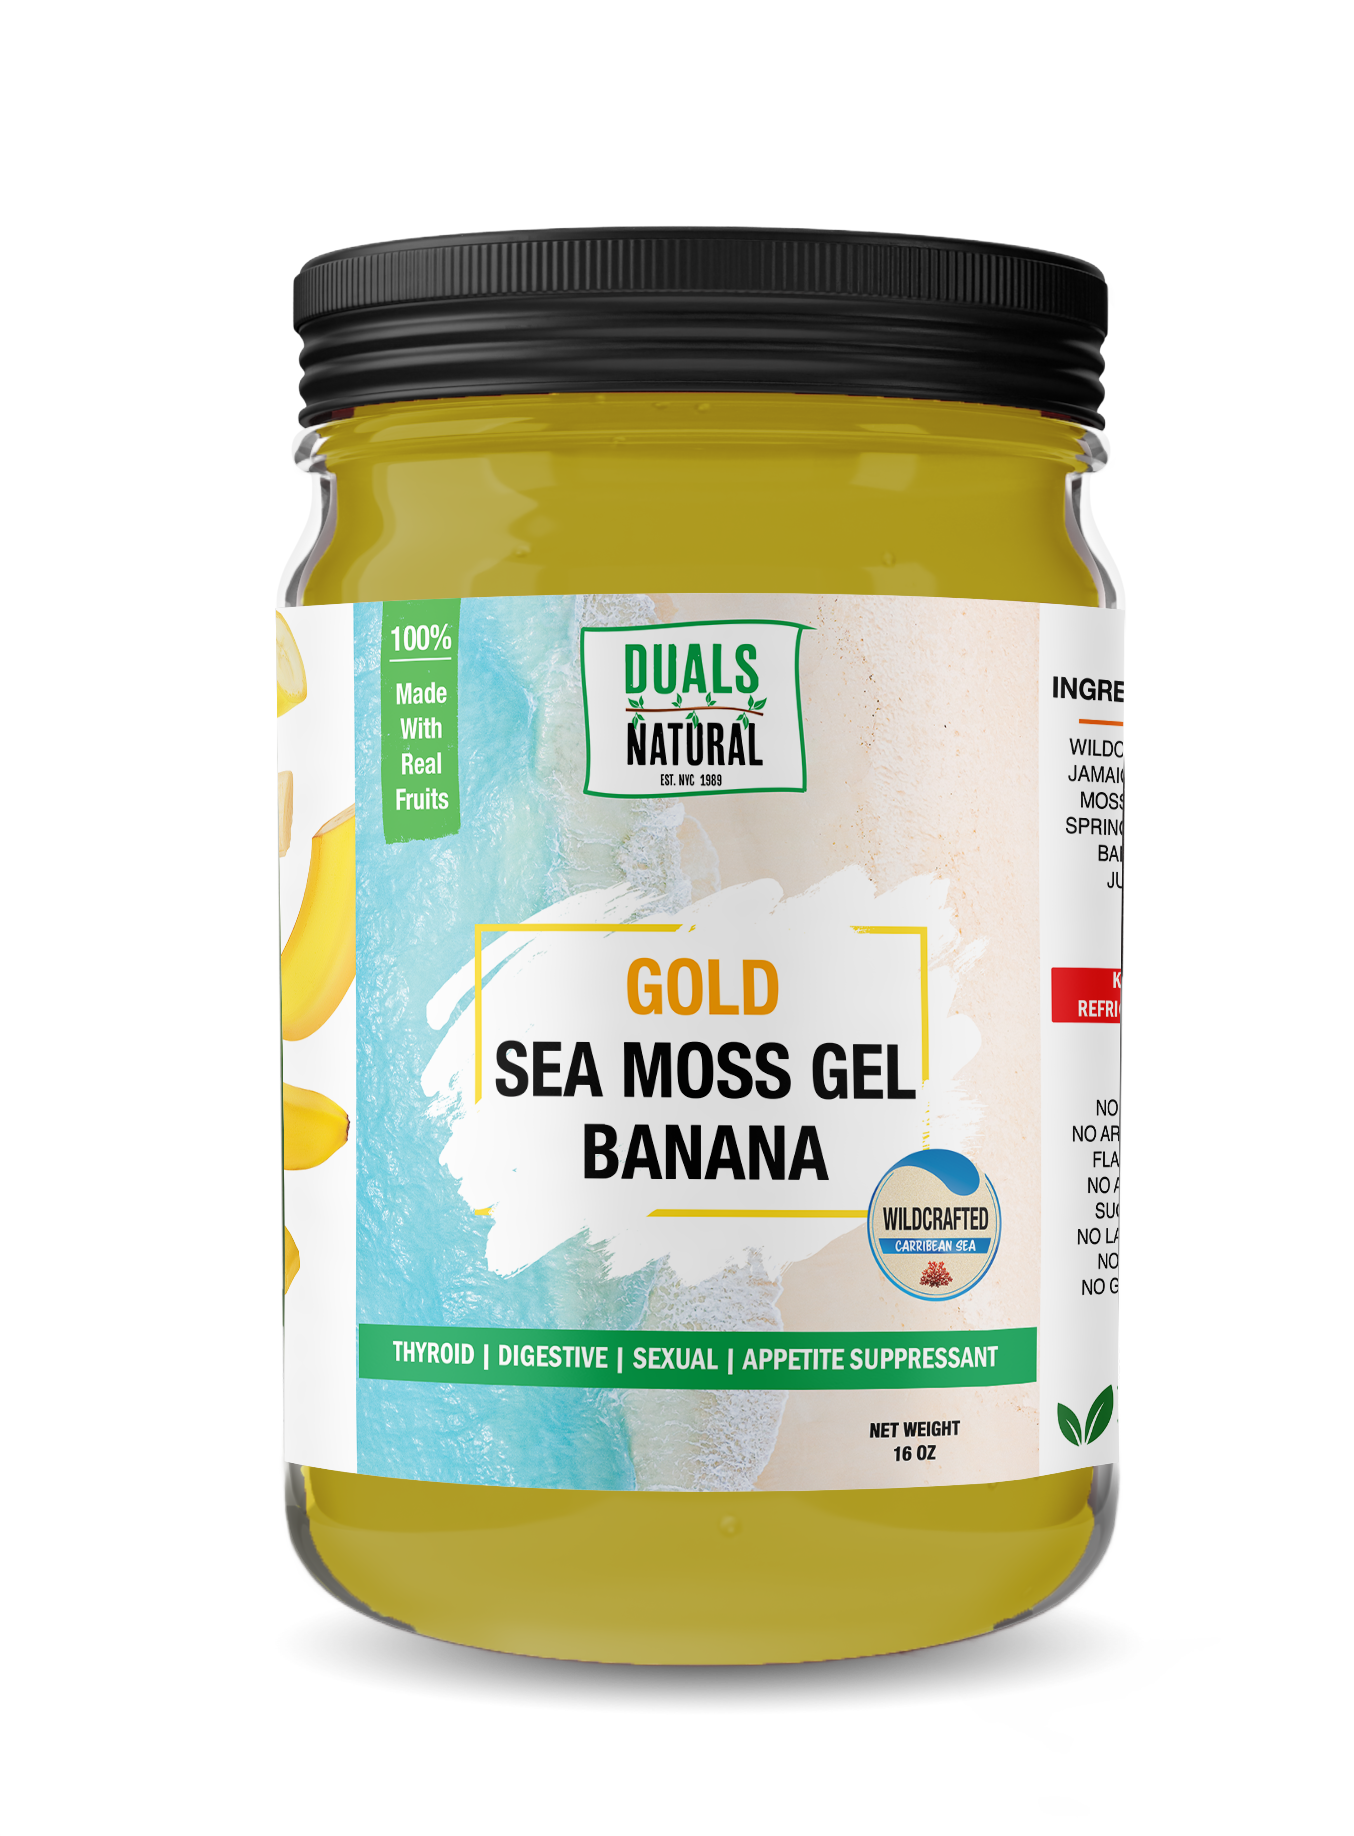 Wildcrafted Golden Sea Moss Gel